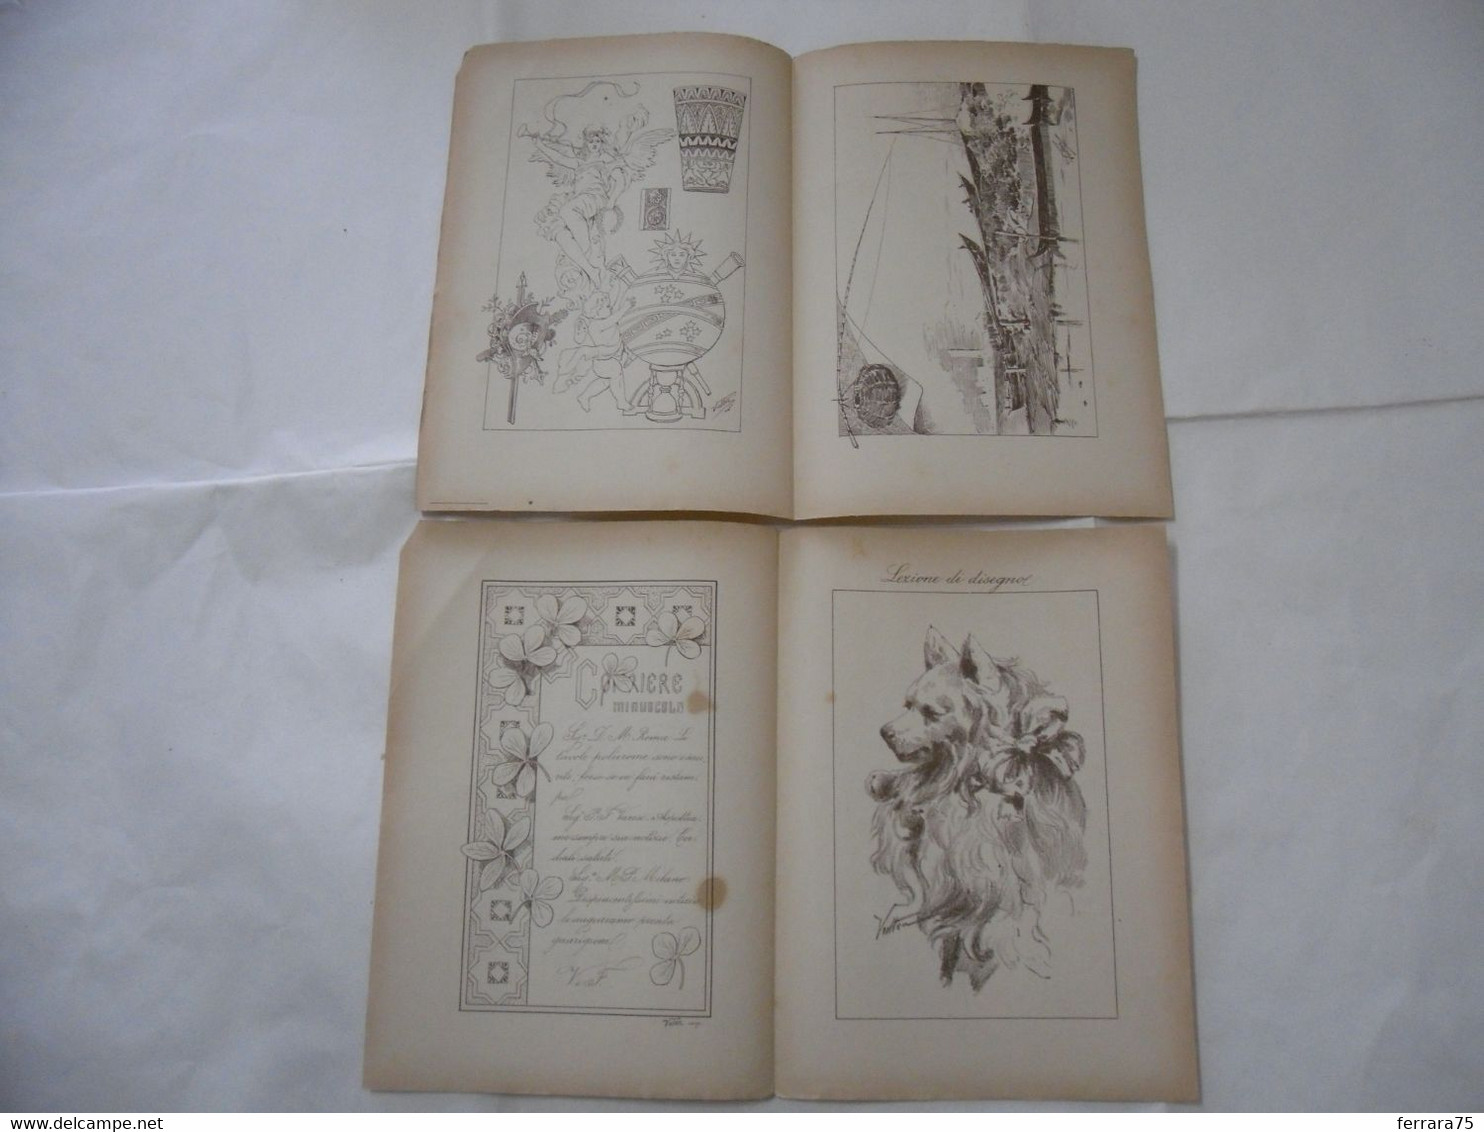 ARTE MINUSCOLA LEZIONE DI DISEGNO ARTE MODA ARALDICA LIBERTY SCRITTURA 1897-70 - Libri Antichi